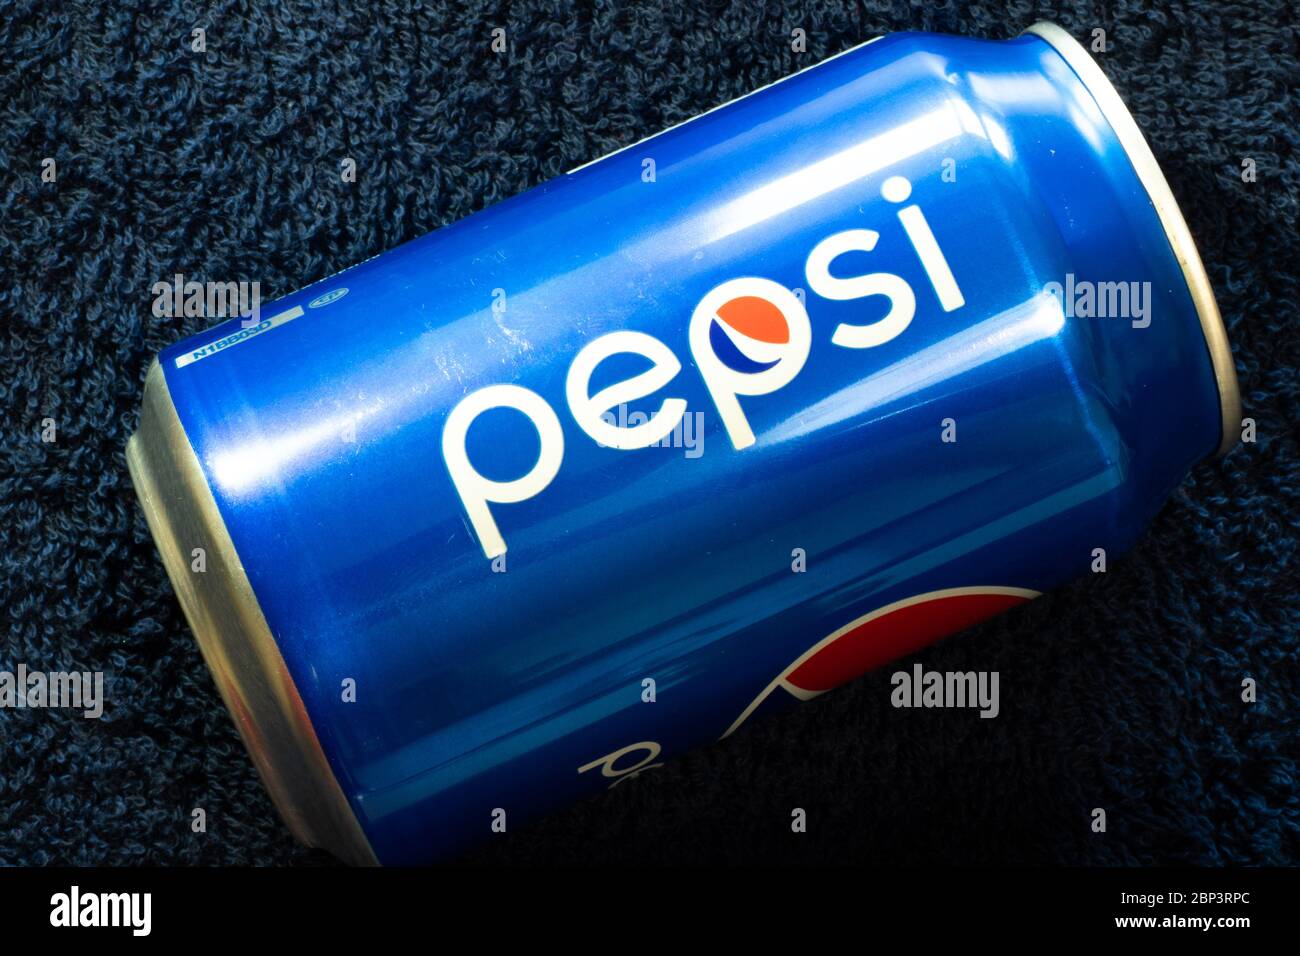 Nueva York, EE.UU. - 15 de mayo de 2020: CAN de Pepsi primer plano superior. Logotipo de Marca, editorial ilustrativa Foto de stock